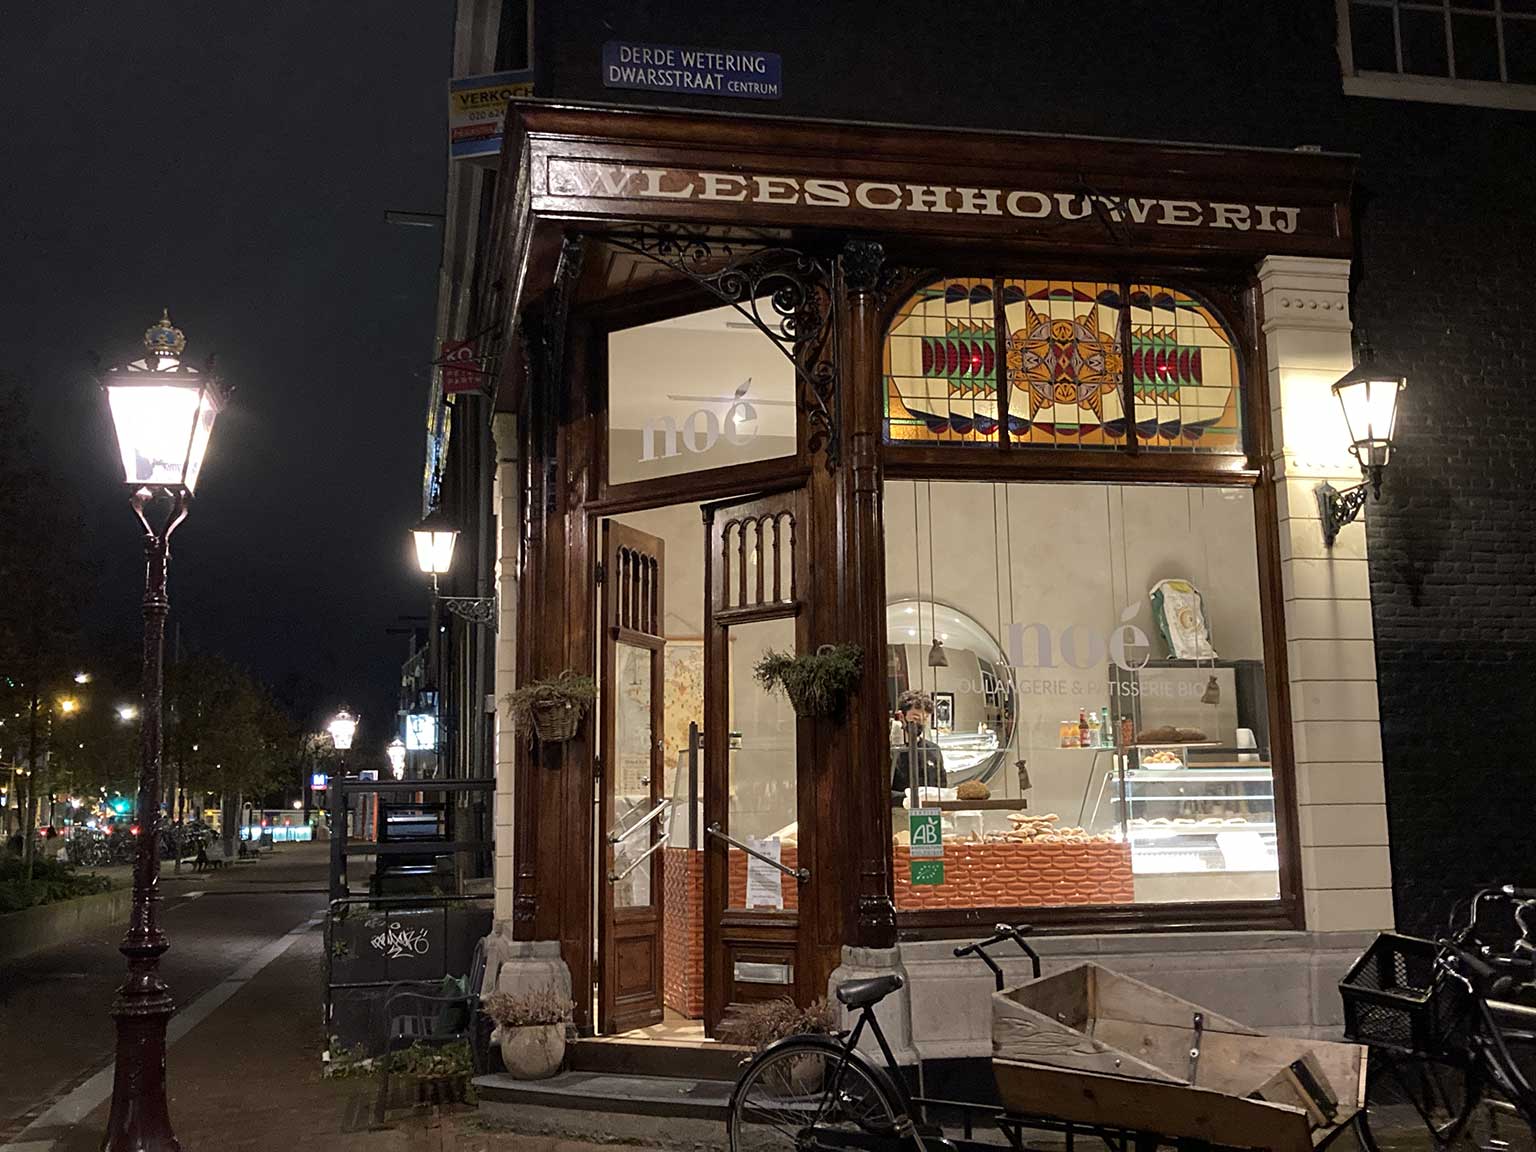 Boulangerie Noé op de Vijzel­gracht 20, Amsterdam, hoek Derde Wetering­dwars­straat